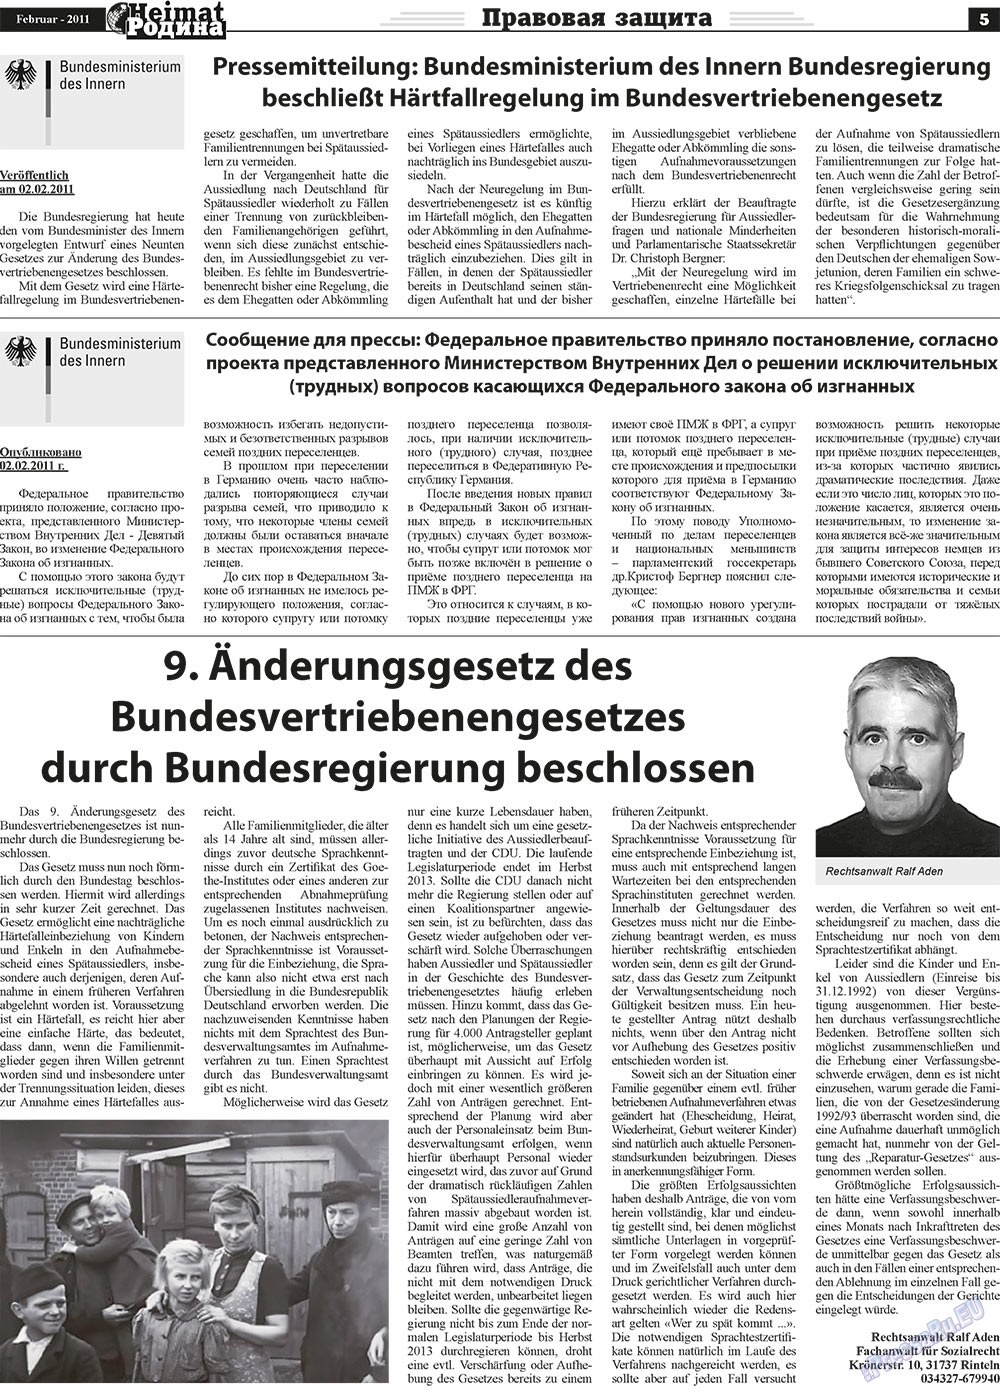 Heimat-Родина (газета). 2011 год, номер 2, стр. 5